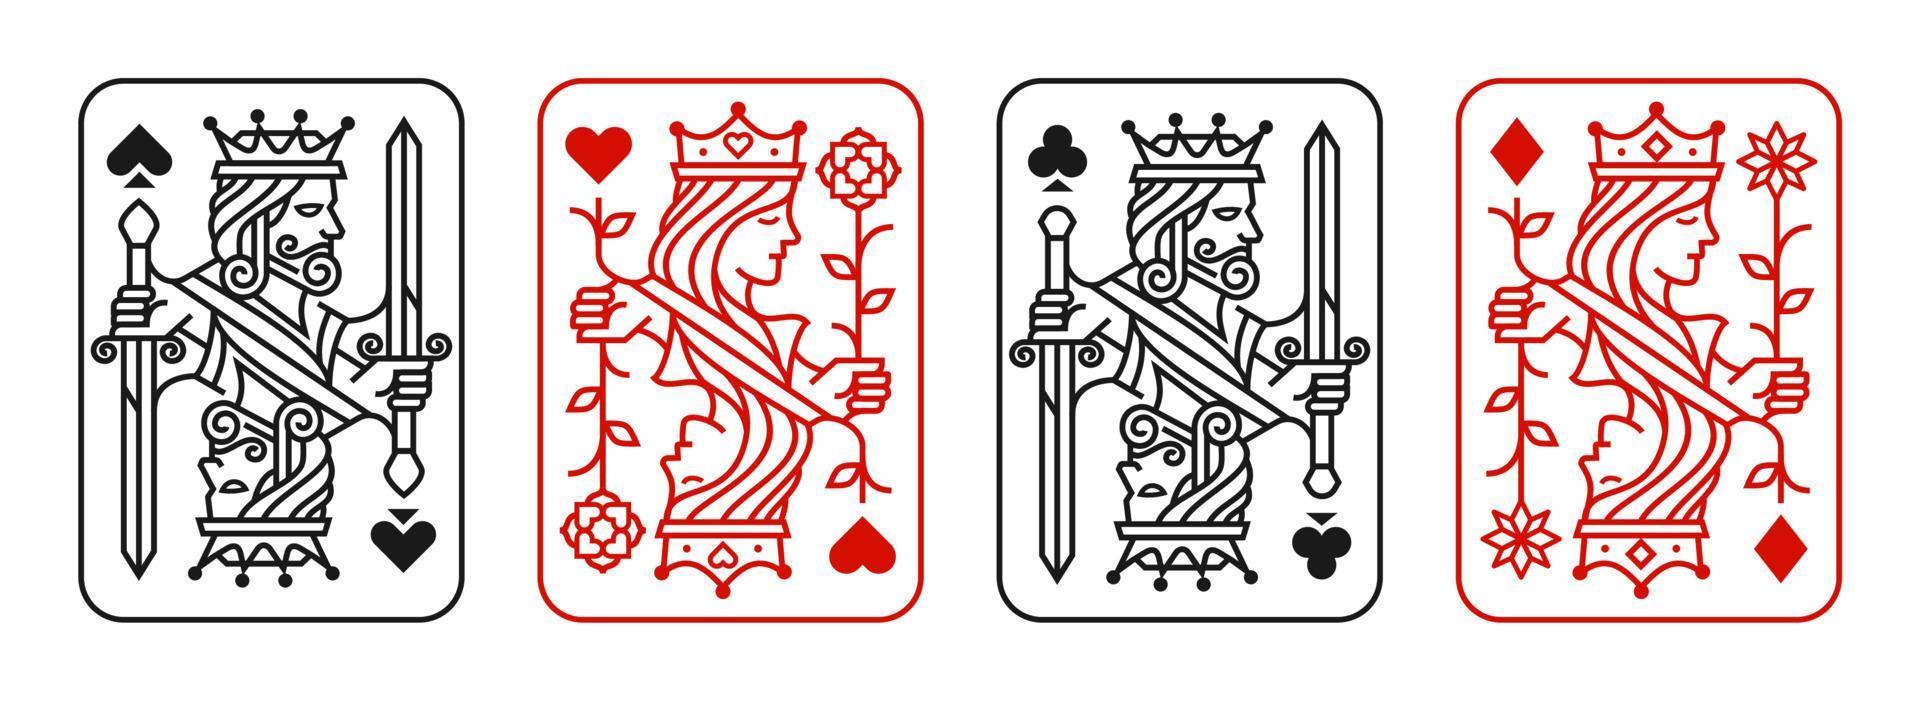 conjunto de ilustração vetorial de cartas de baralho rei e rainha de corações, pá, diamante e clube, coleção de design de cartas reais vetor